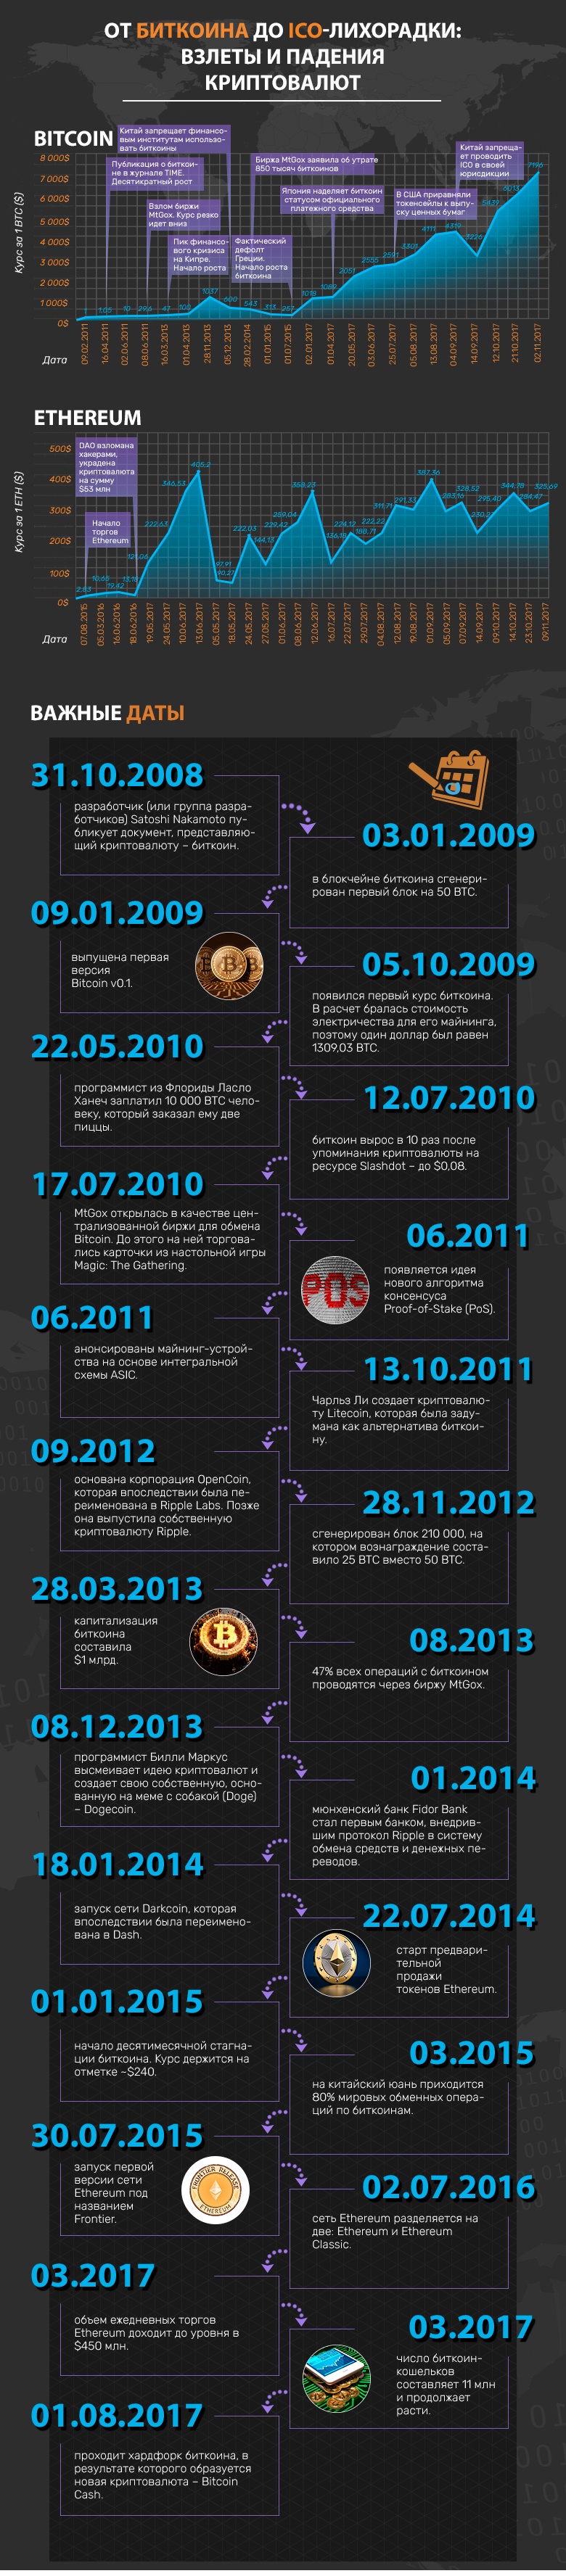 История криптовалют: от биткоина до ICO-лихорадки. Инфографика - 1